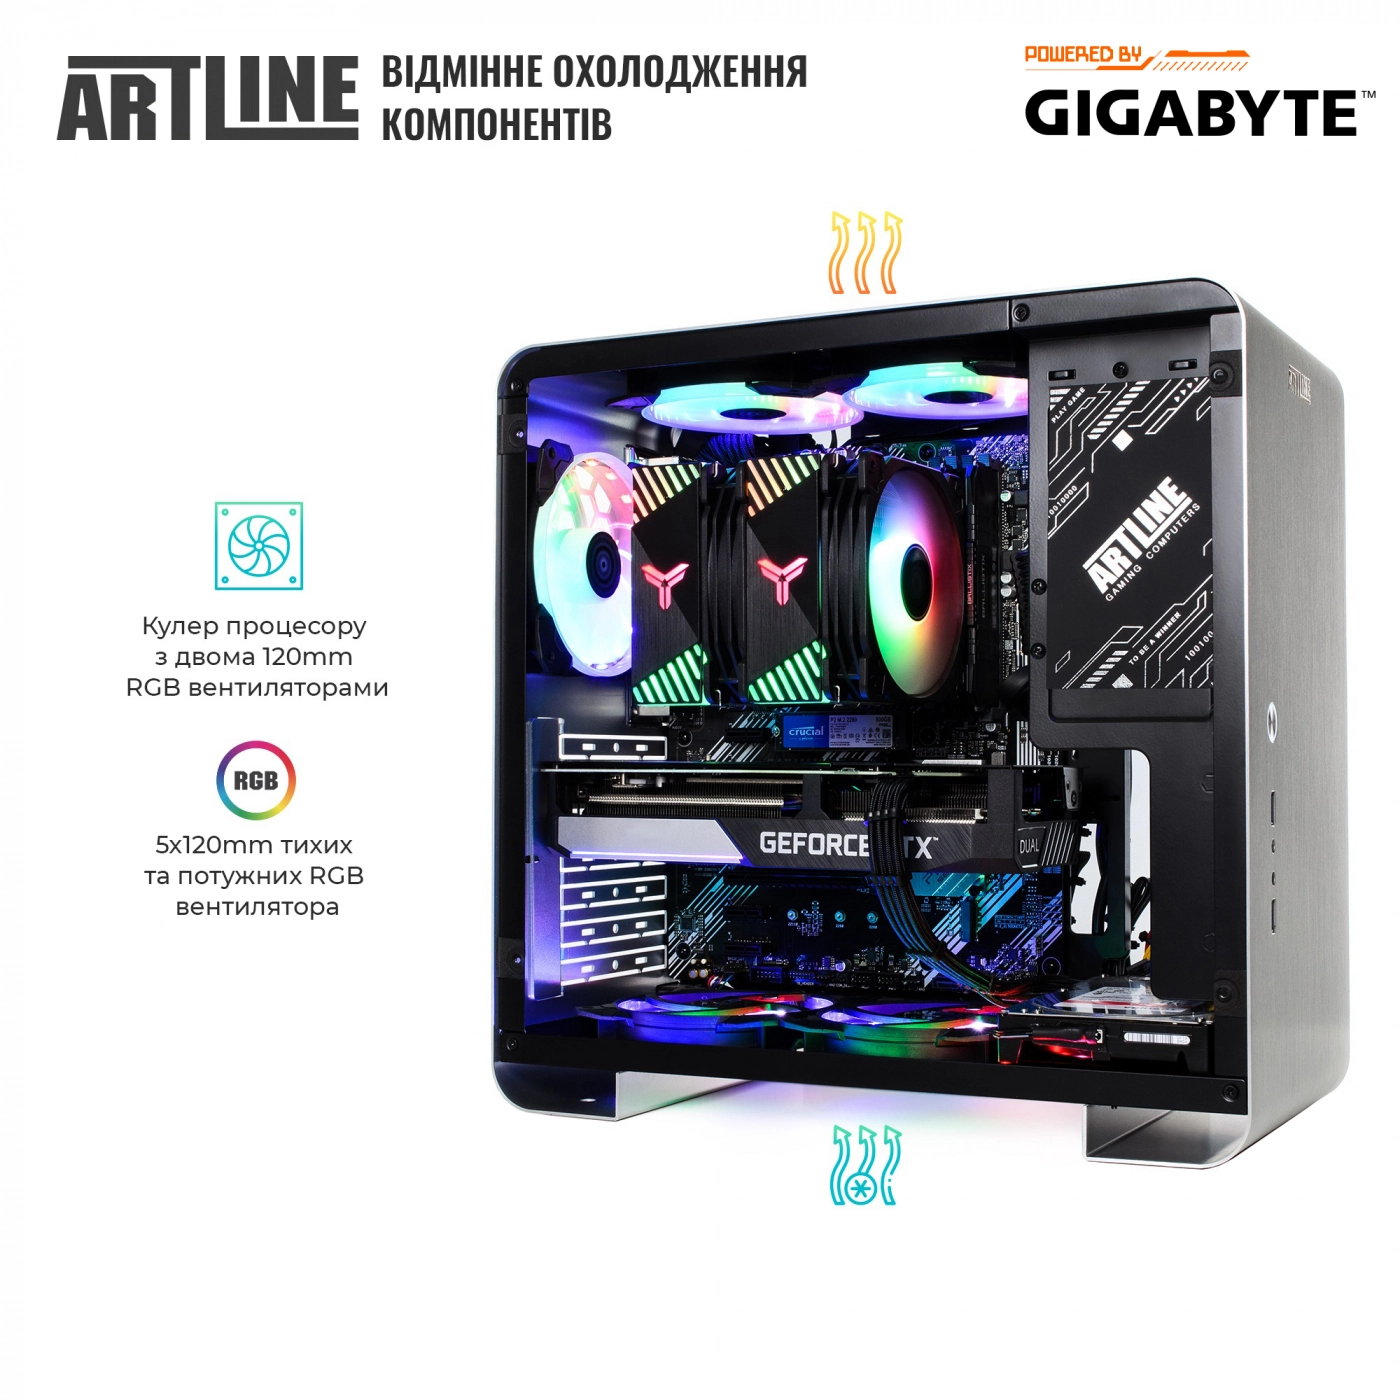 Купить Компьютер ARTLINE Gaming X55v38 - фото 9